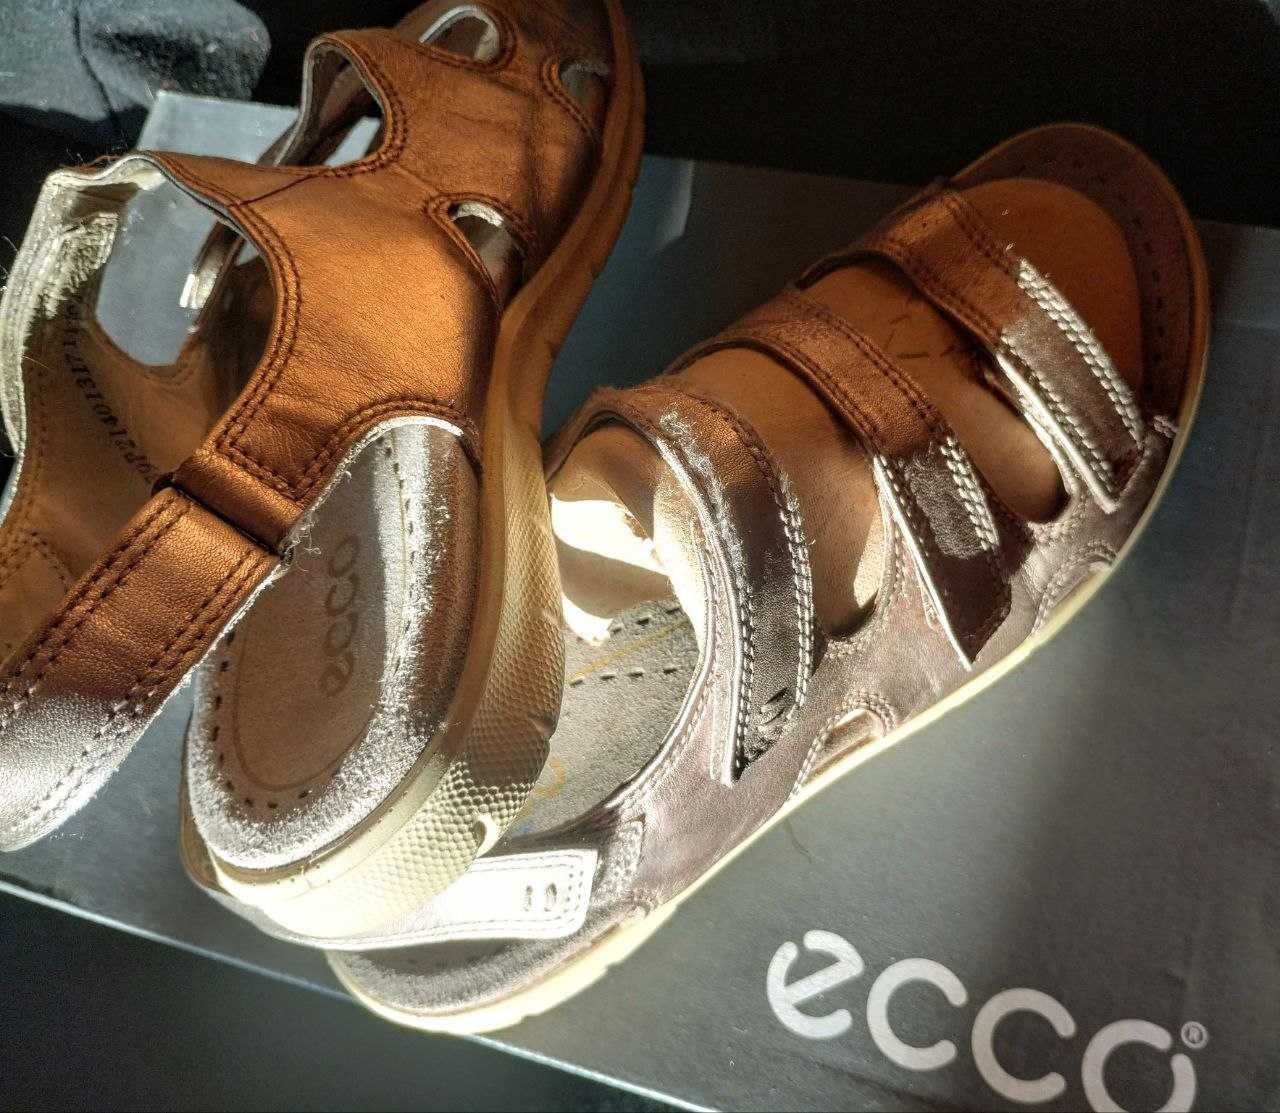 Сандалі ECCO, жіноче взуття, босоніжки р 38, нат.шкіра, брендові